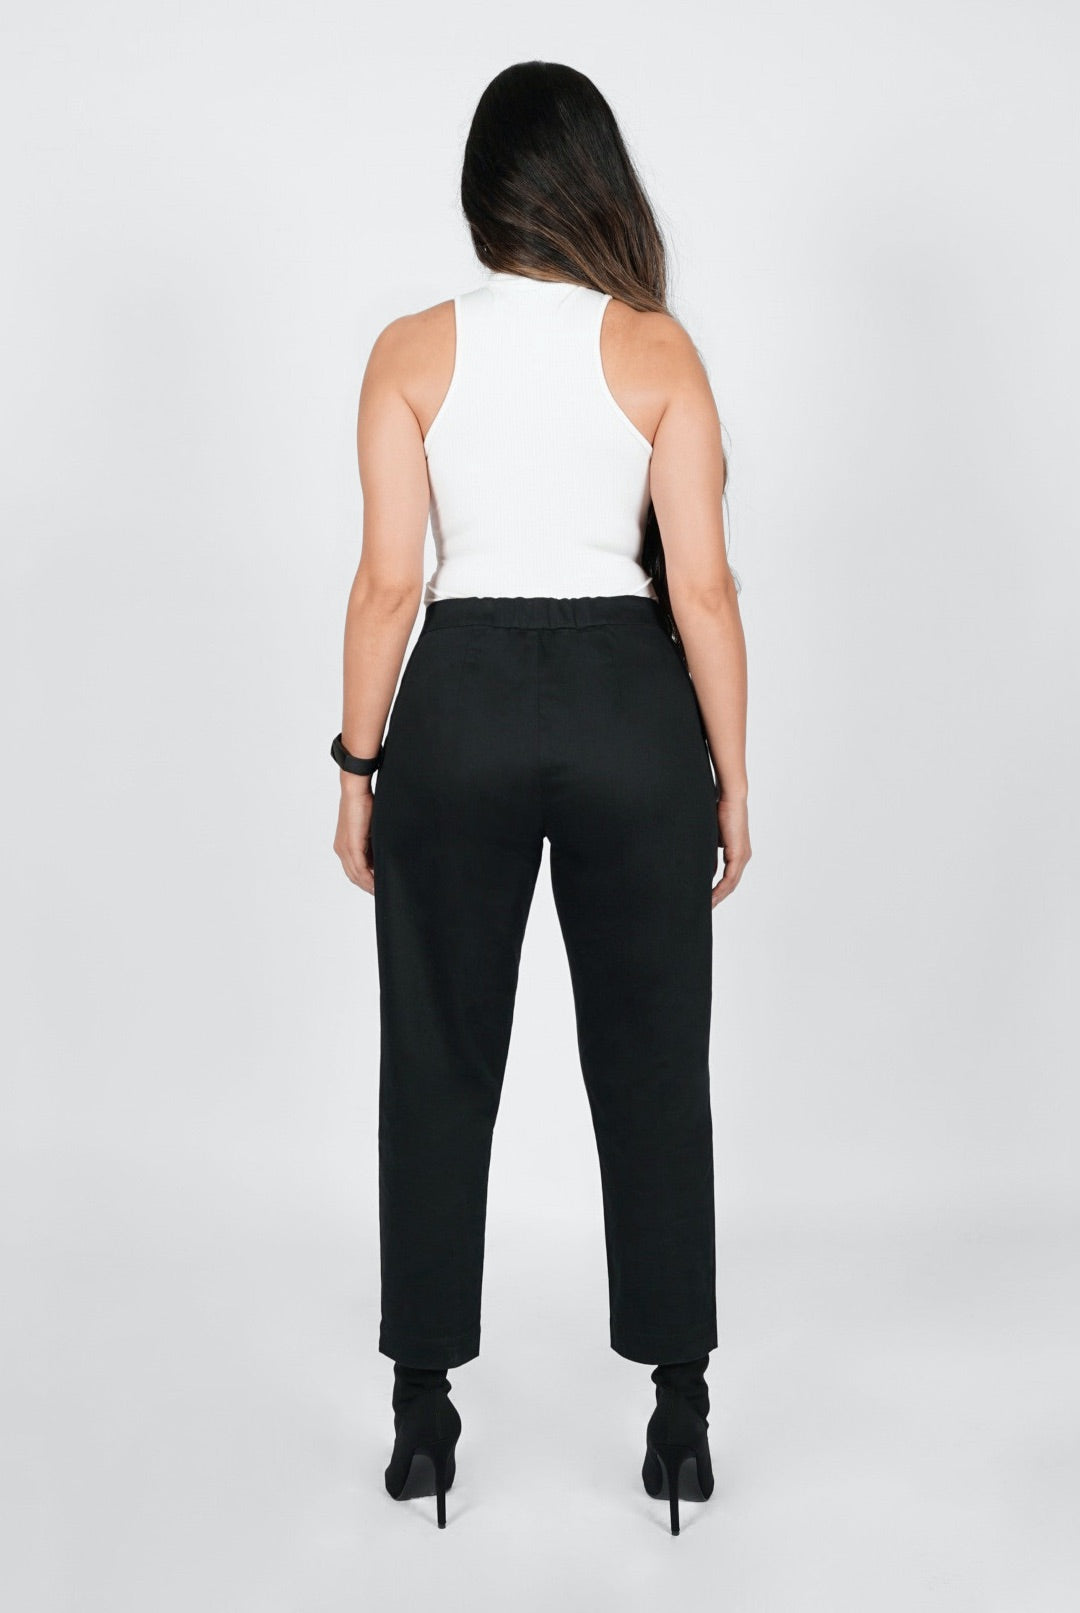 86% OFF on H & N Relaxed Women Black Trousers on Flipkart | PaisaWapas.com